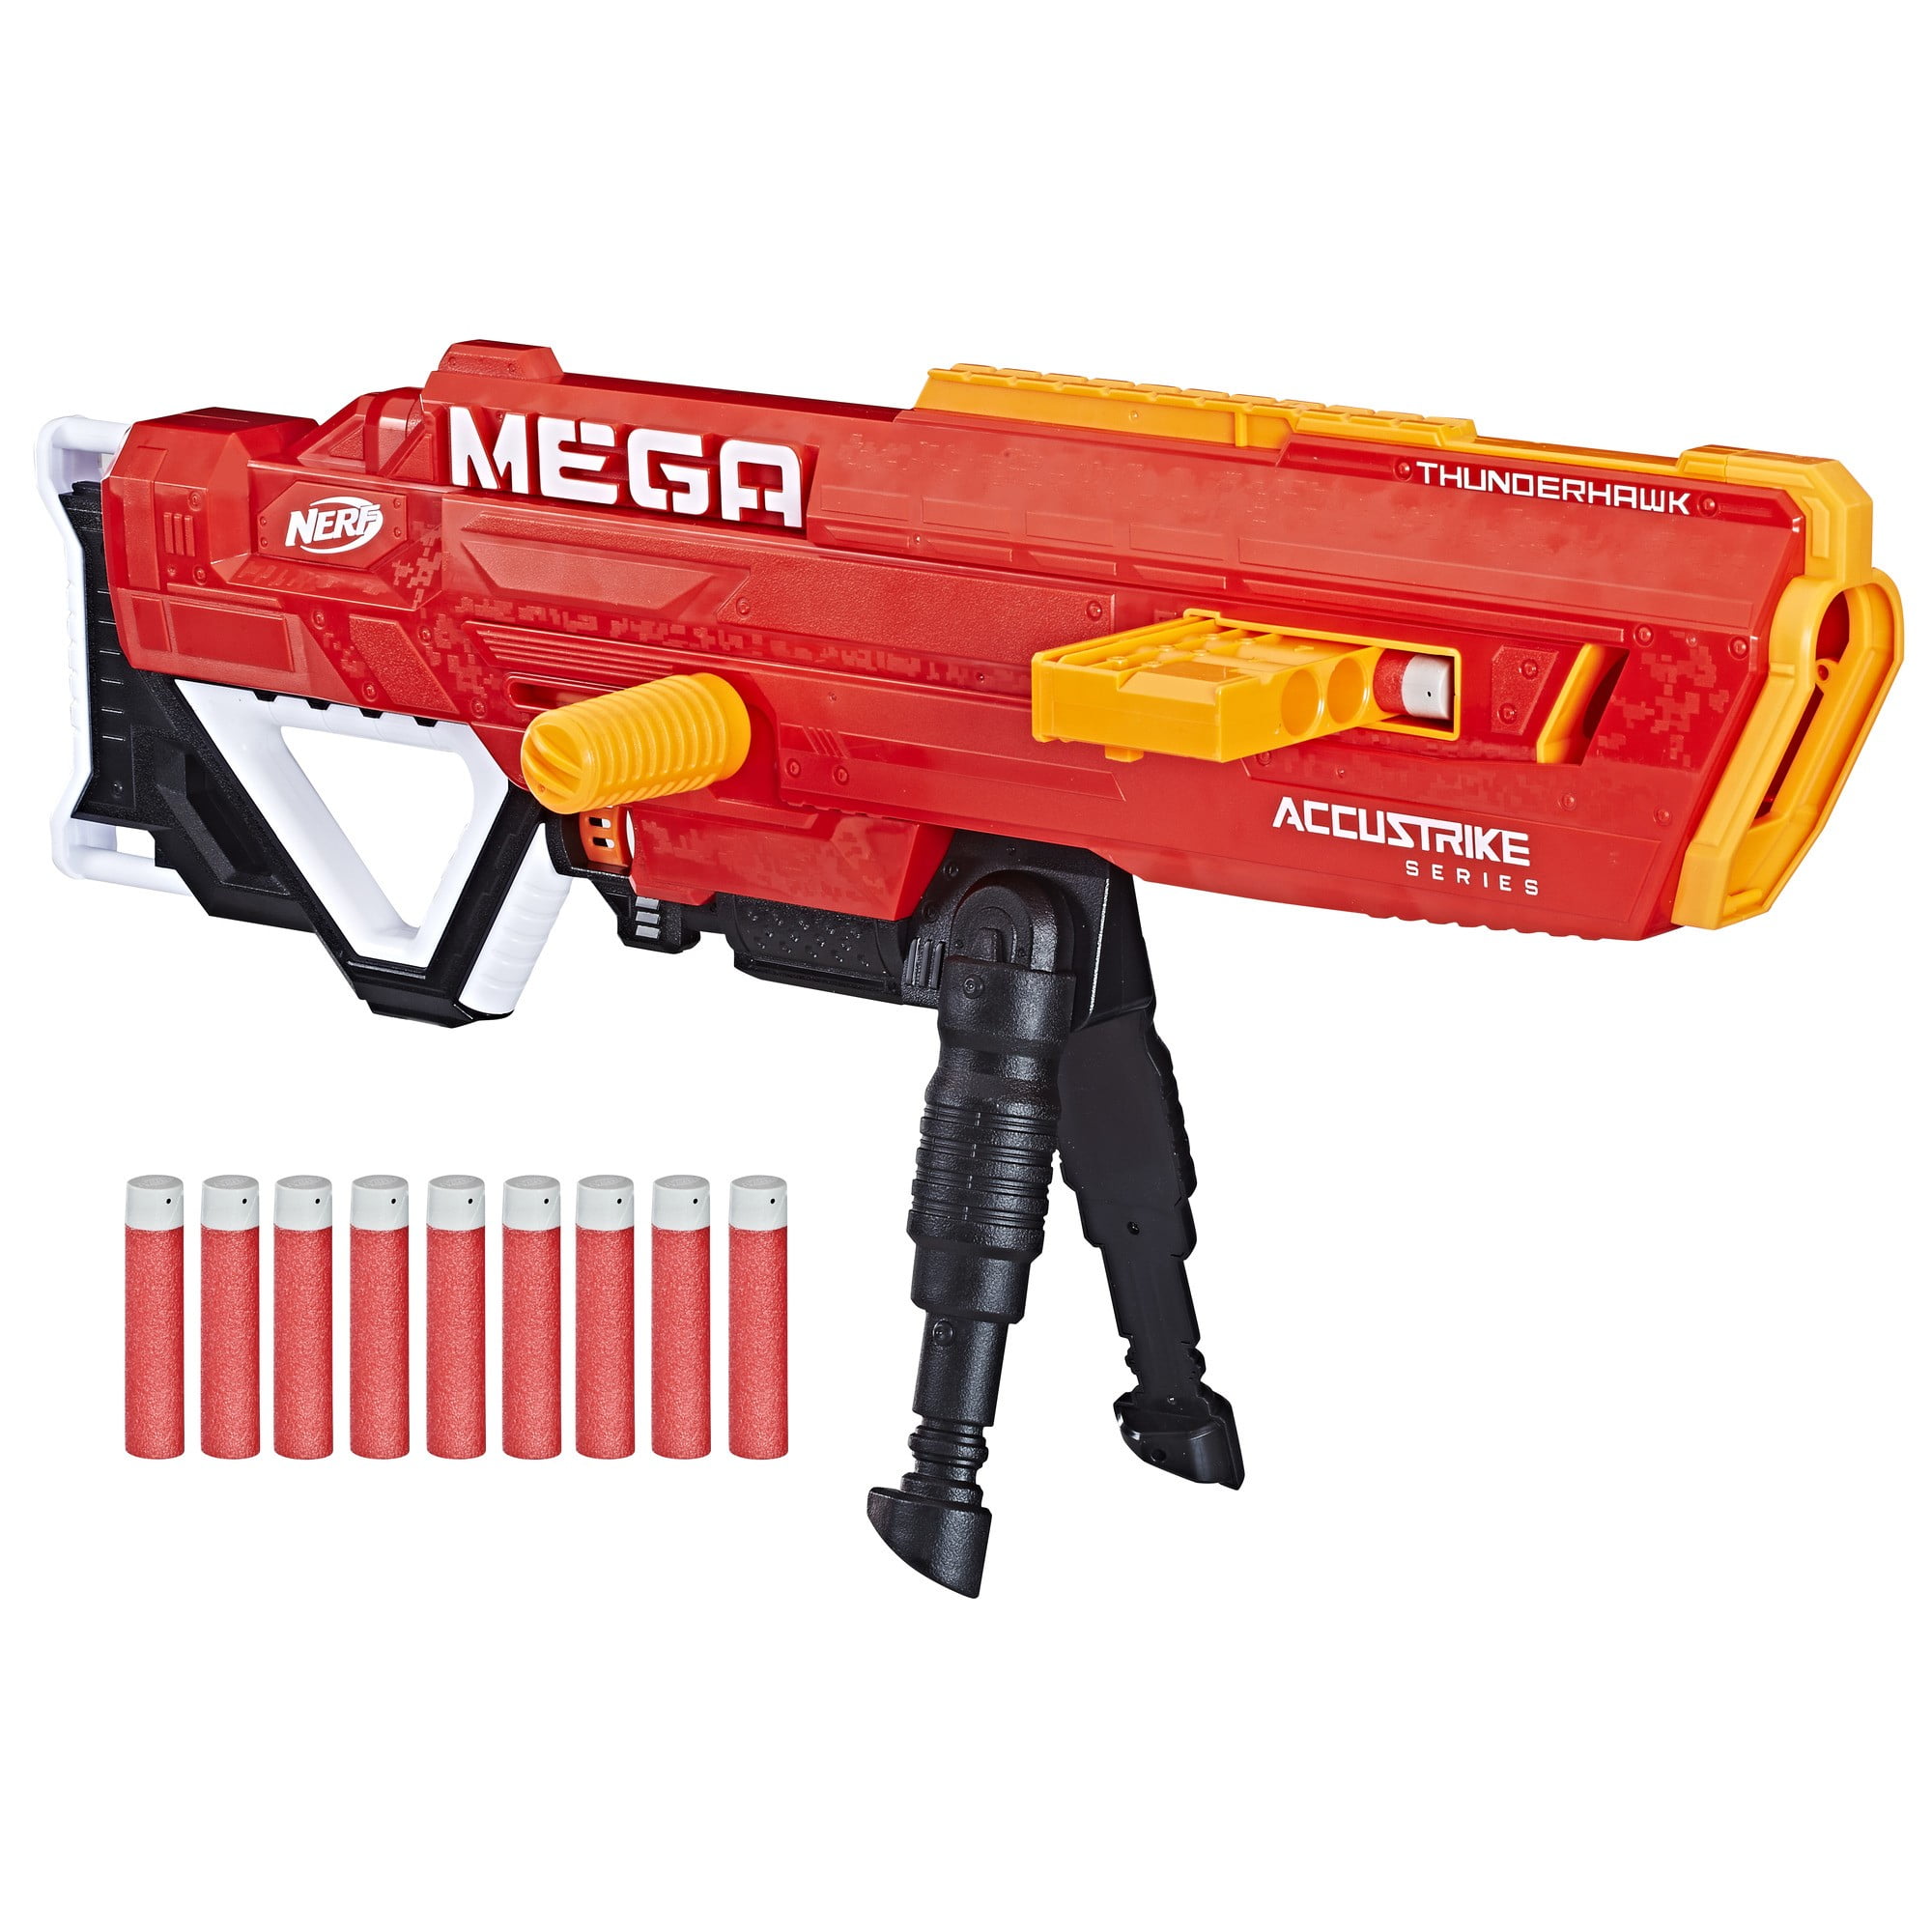 NERF E0016 N-strike Modulus Mediator Blaster Gun for sale online 